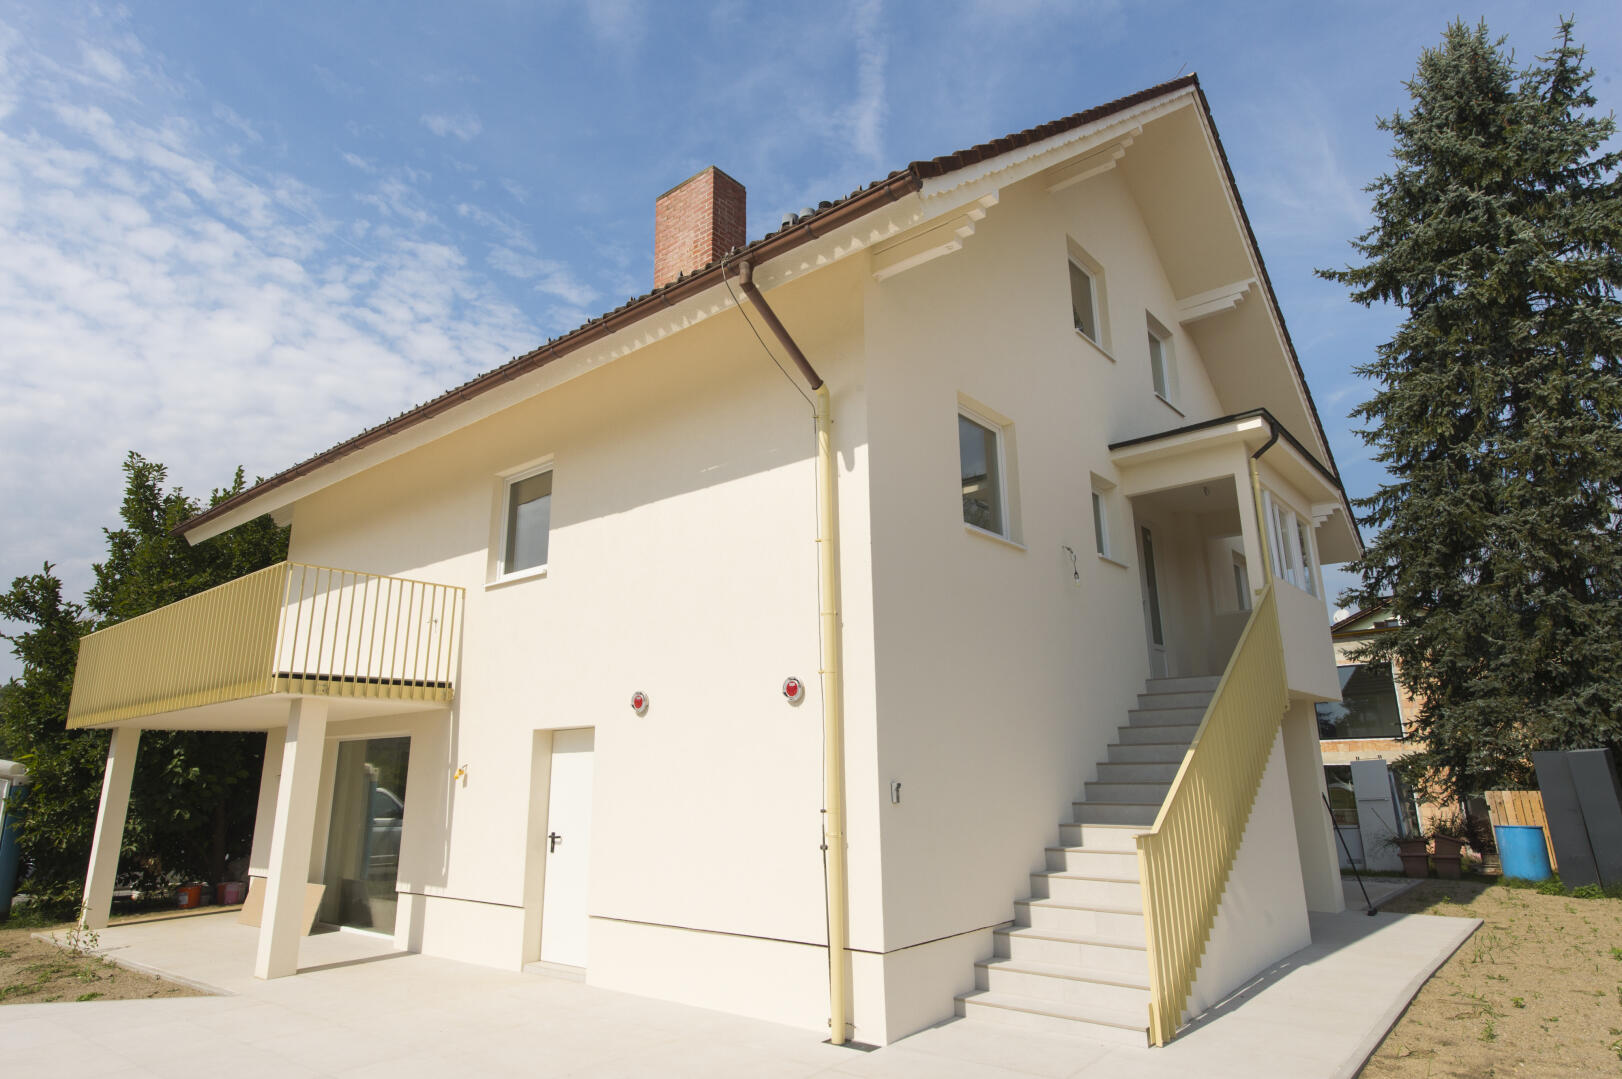 Wohnung zu kaufen: Autaler Straße 37, 8042 Graz - Maisonette-Wohnung Graz St. Peter (46)